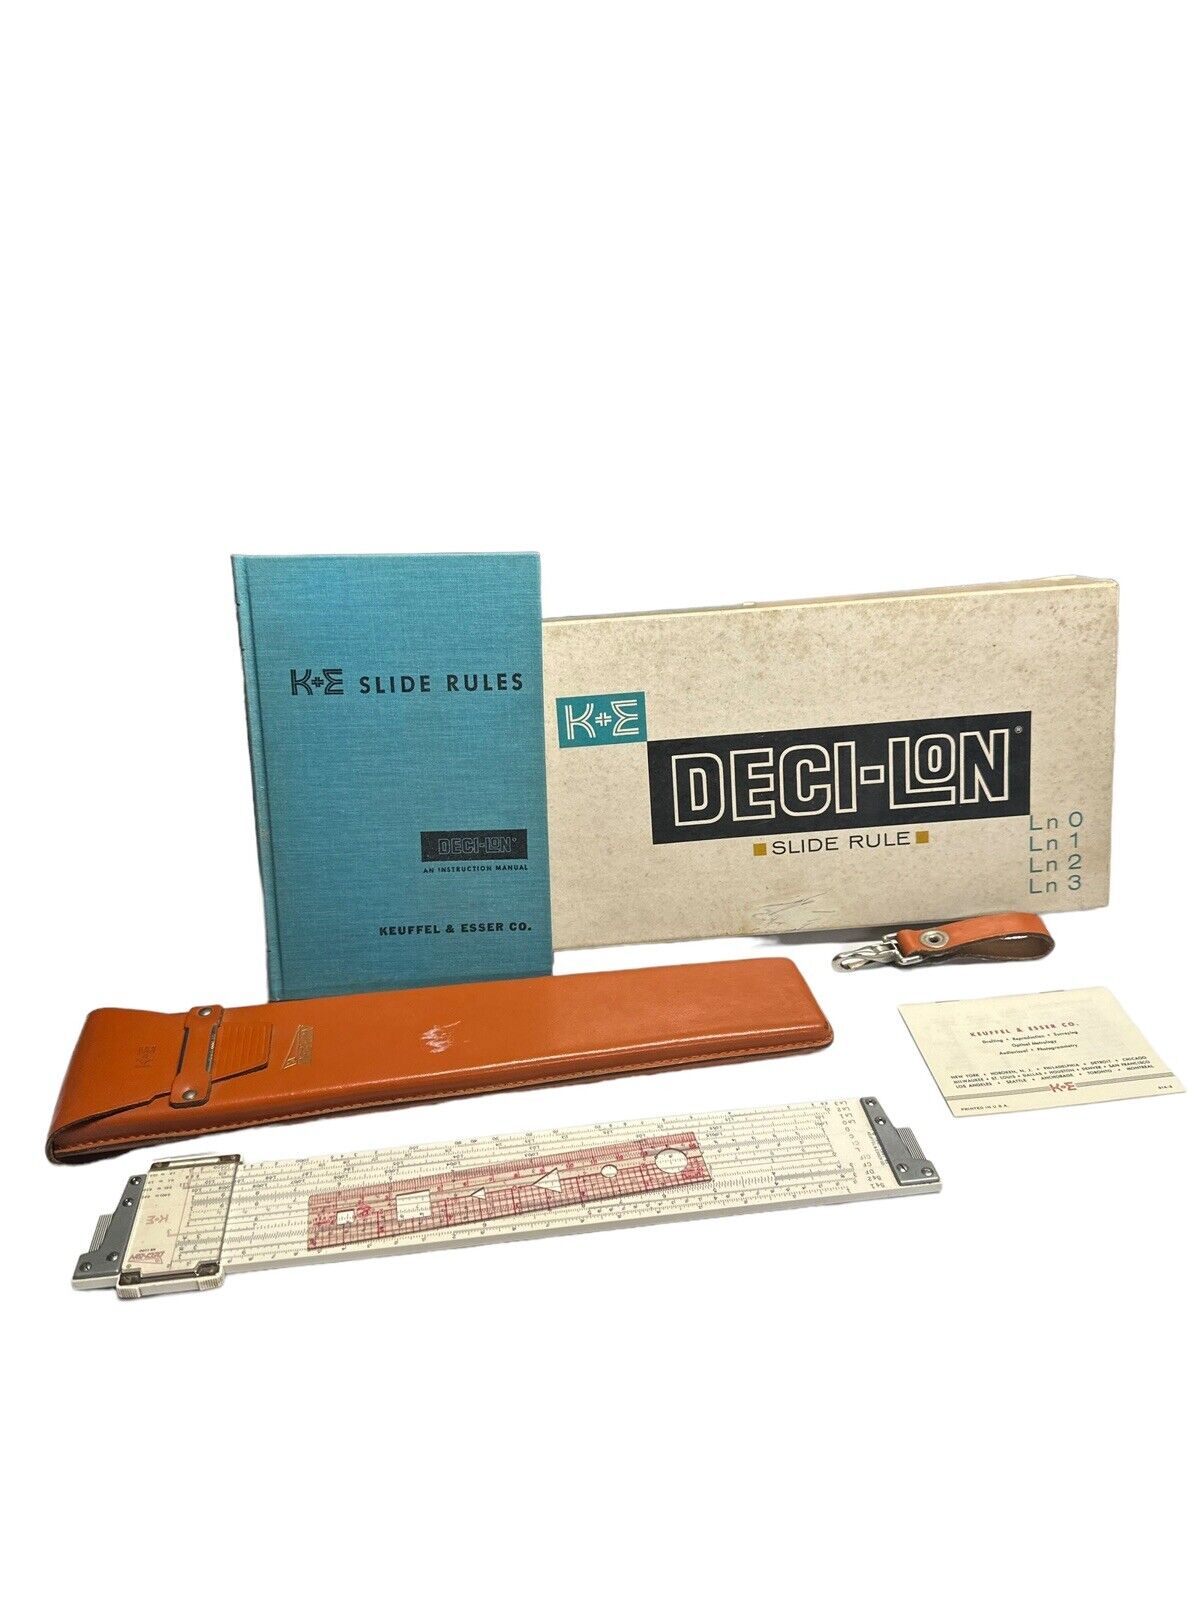 Keuffel & Esser Co. K+E Deci-Lon 68-1100 Slide Rule, Leather Case, Original Box